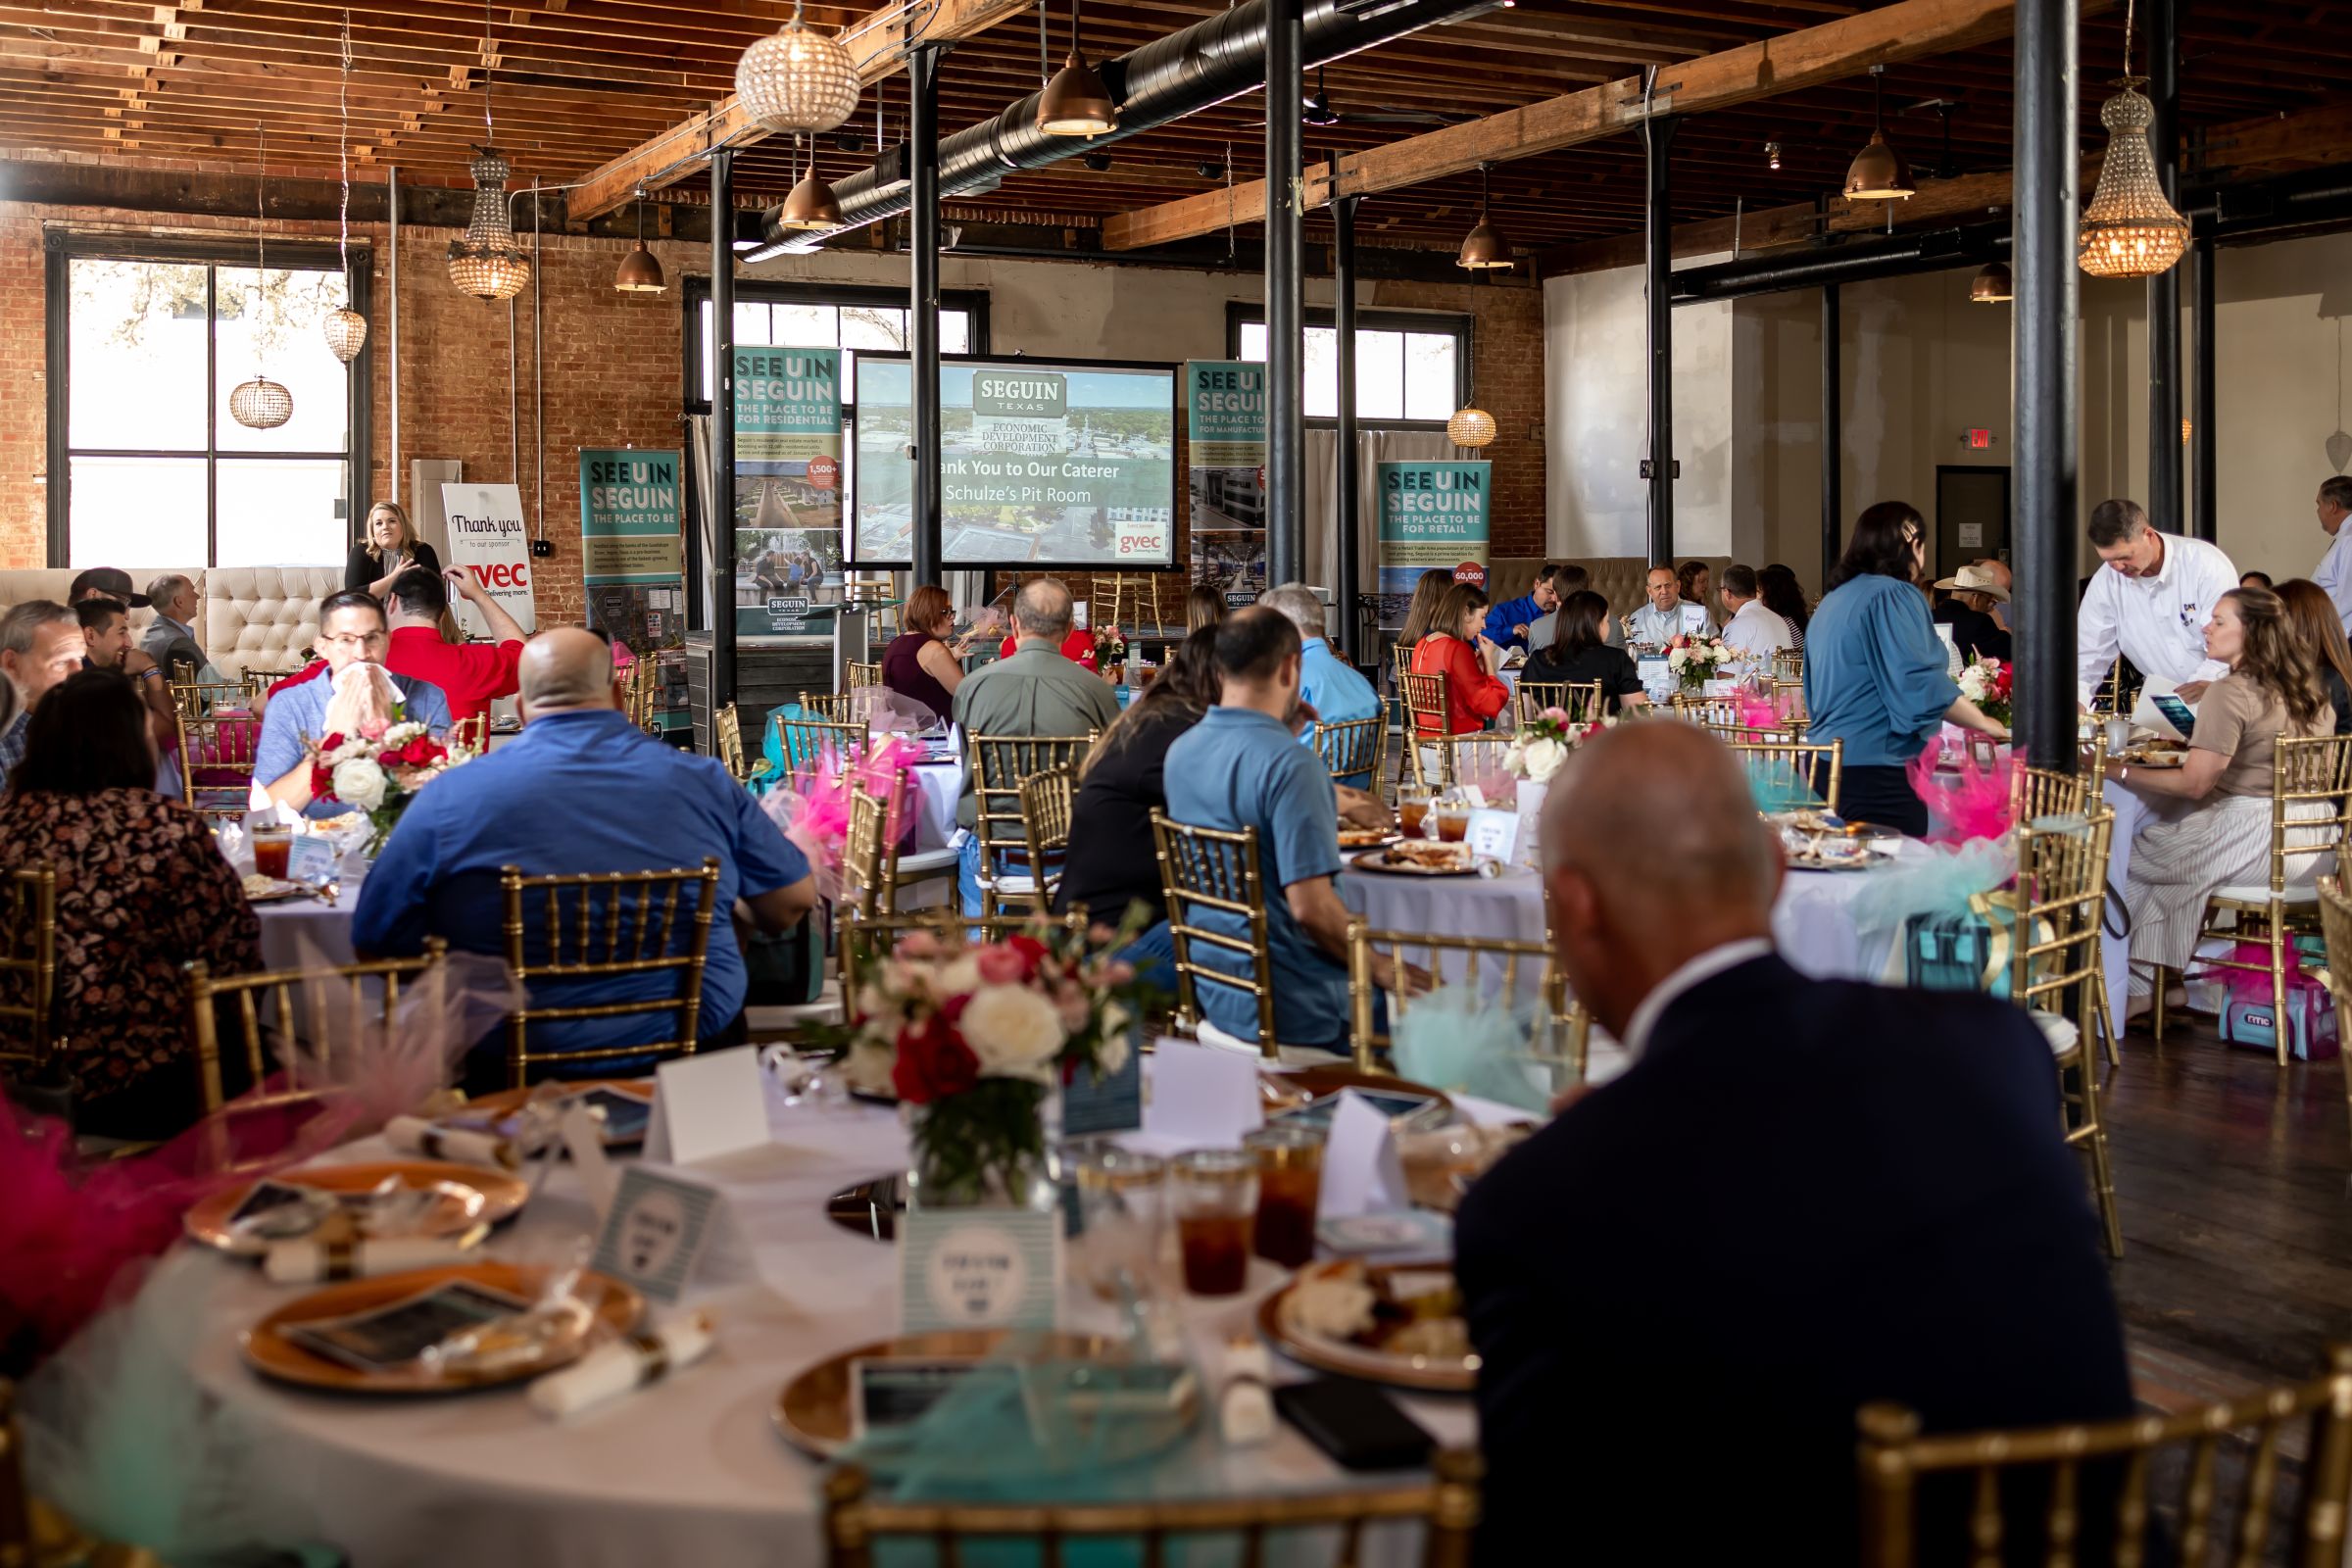 Seguin Economic Development Corporation Hosts 10th Annual Business Appreciation Luncheon Photo